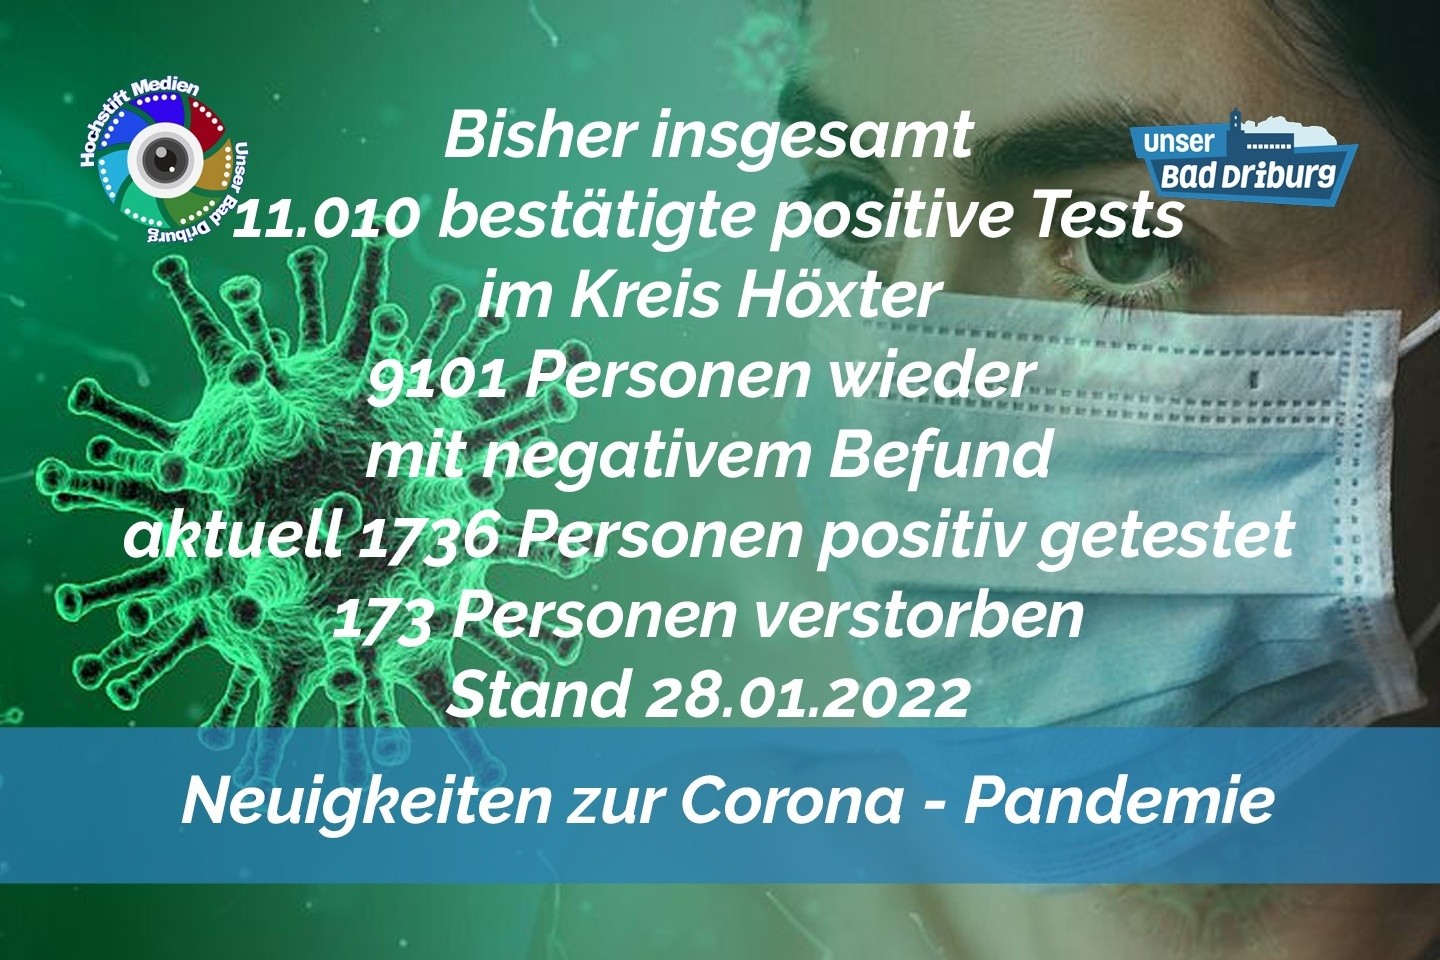 Update 28. Januar 2022: 306 weitere amtlich positive Tests im Kreis Höxter